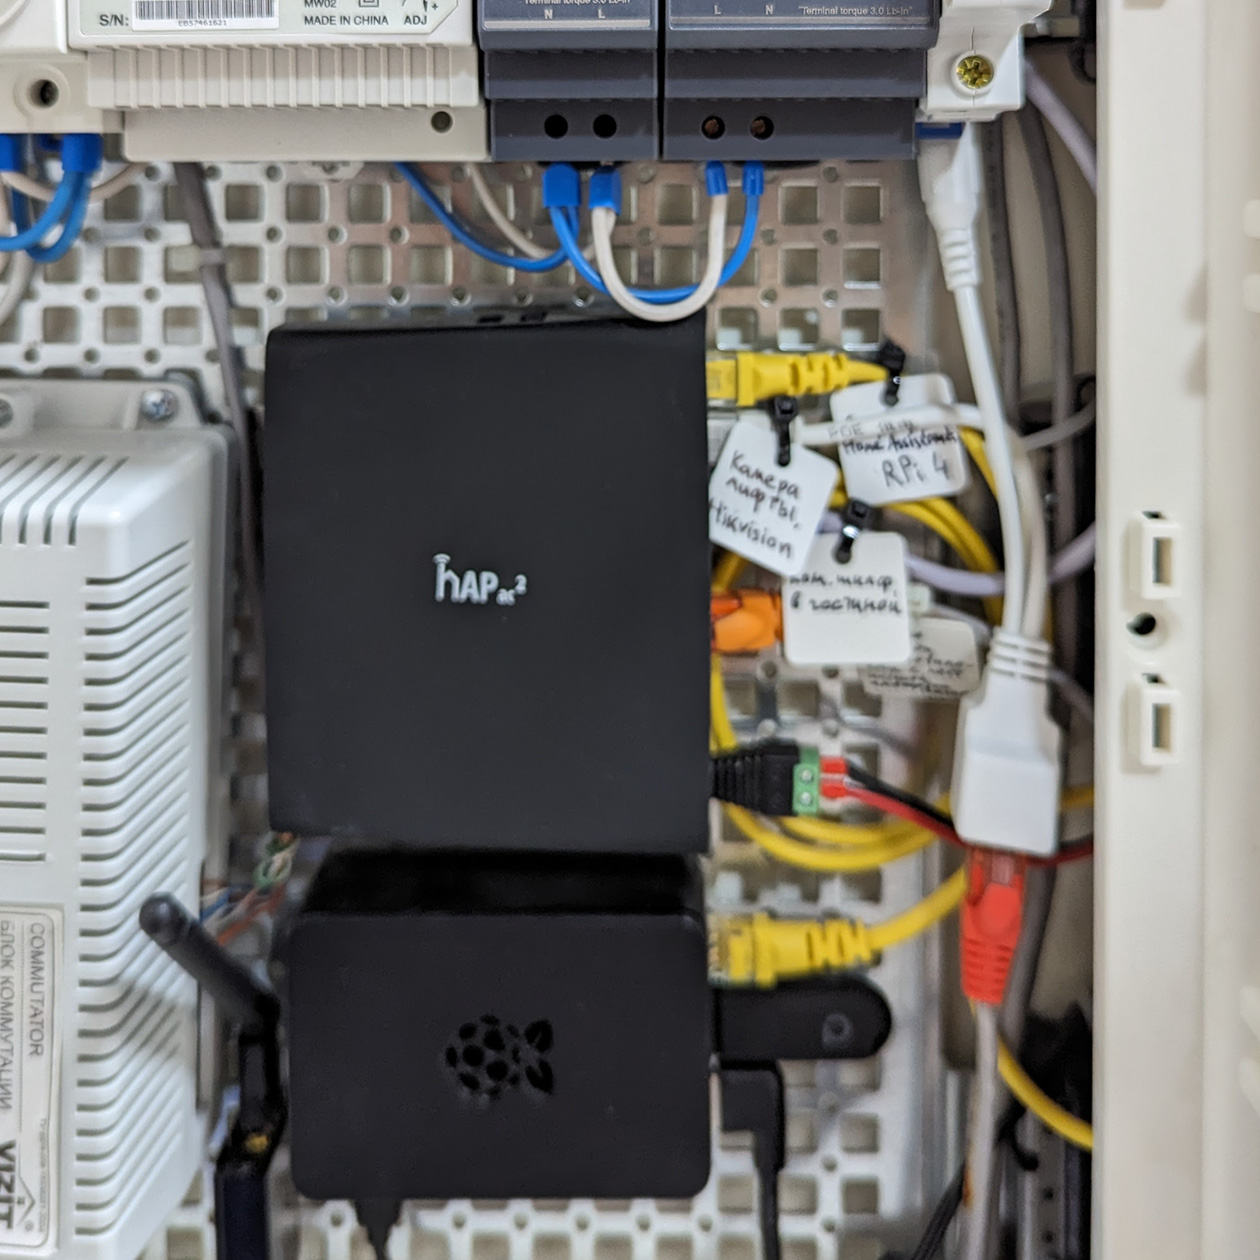 Raspberry Pi 4 — черная коробочка внизу — установлена прямо в электрическом щитке